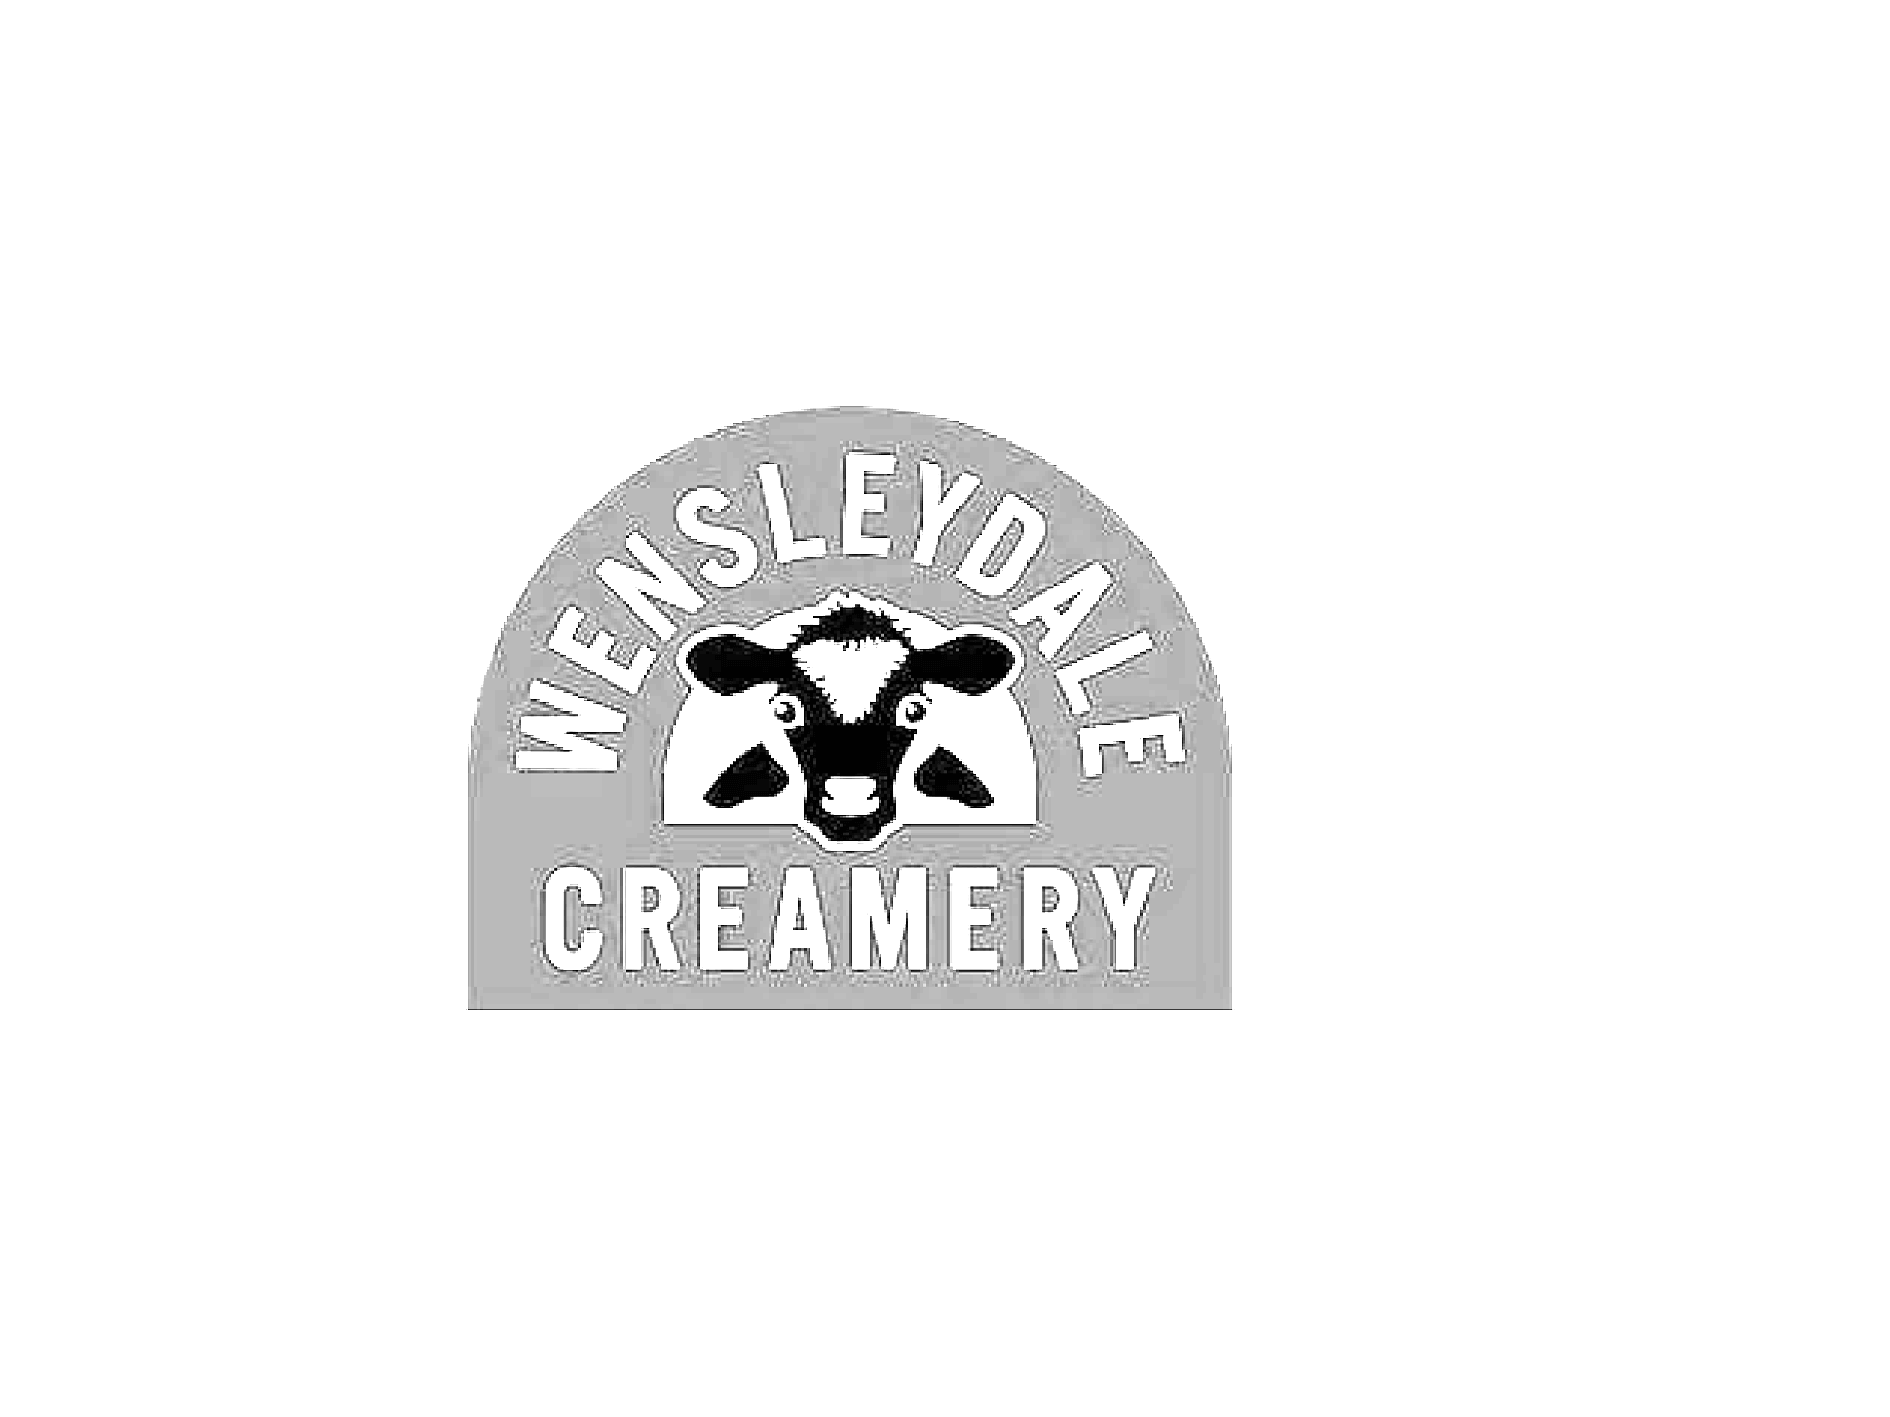 Wensleydale Creamery grey